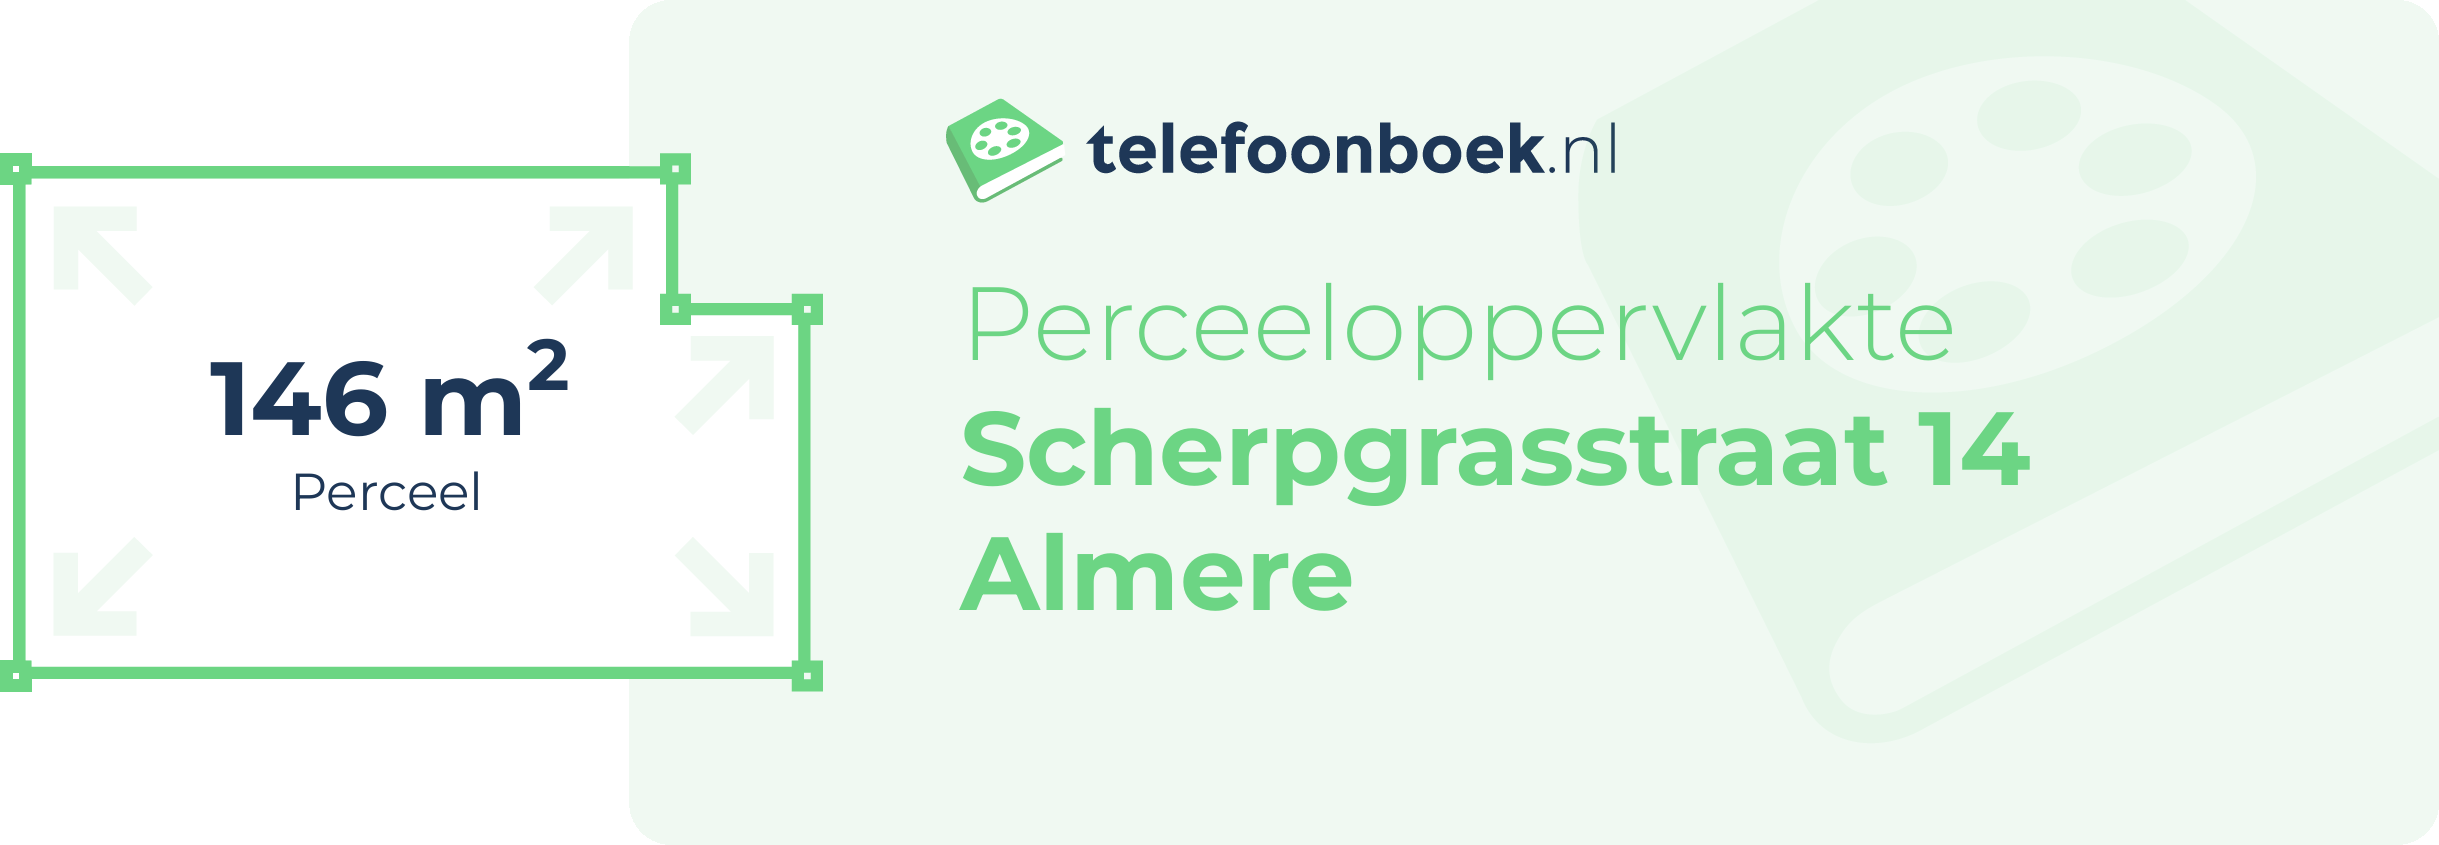 Perceeloppervlakte Scherpgrasstraat 14 Almere